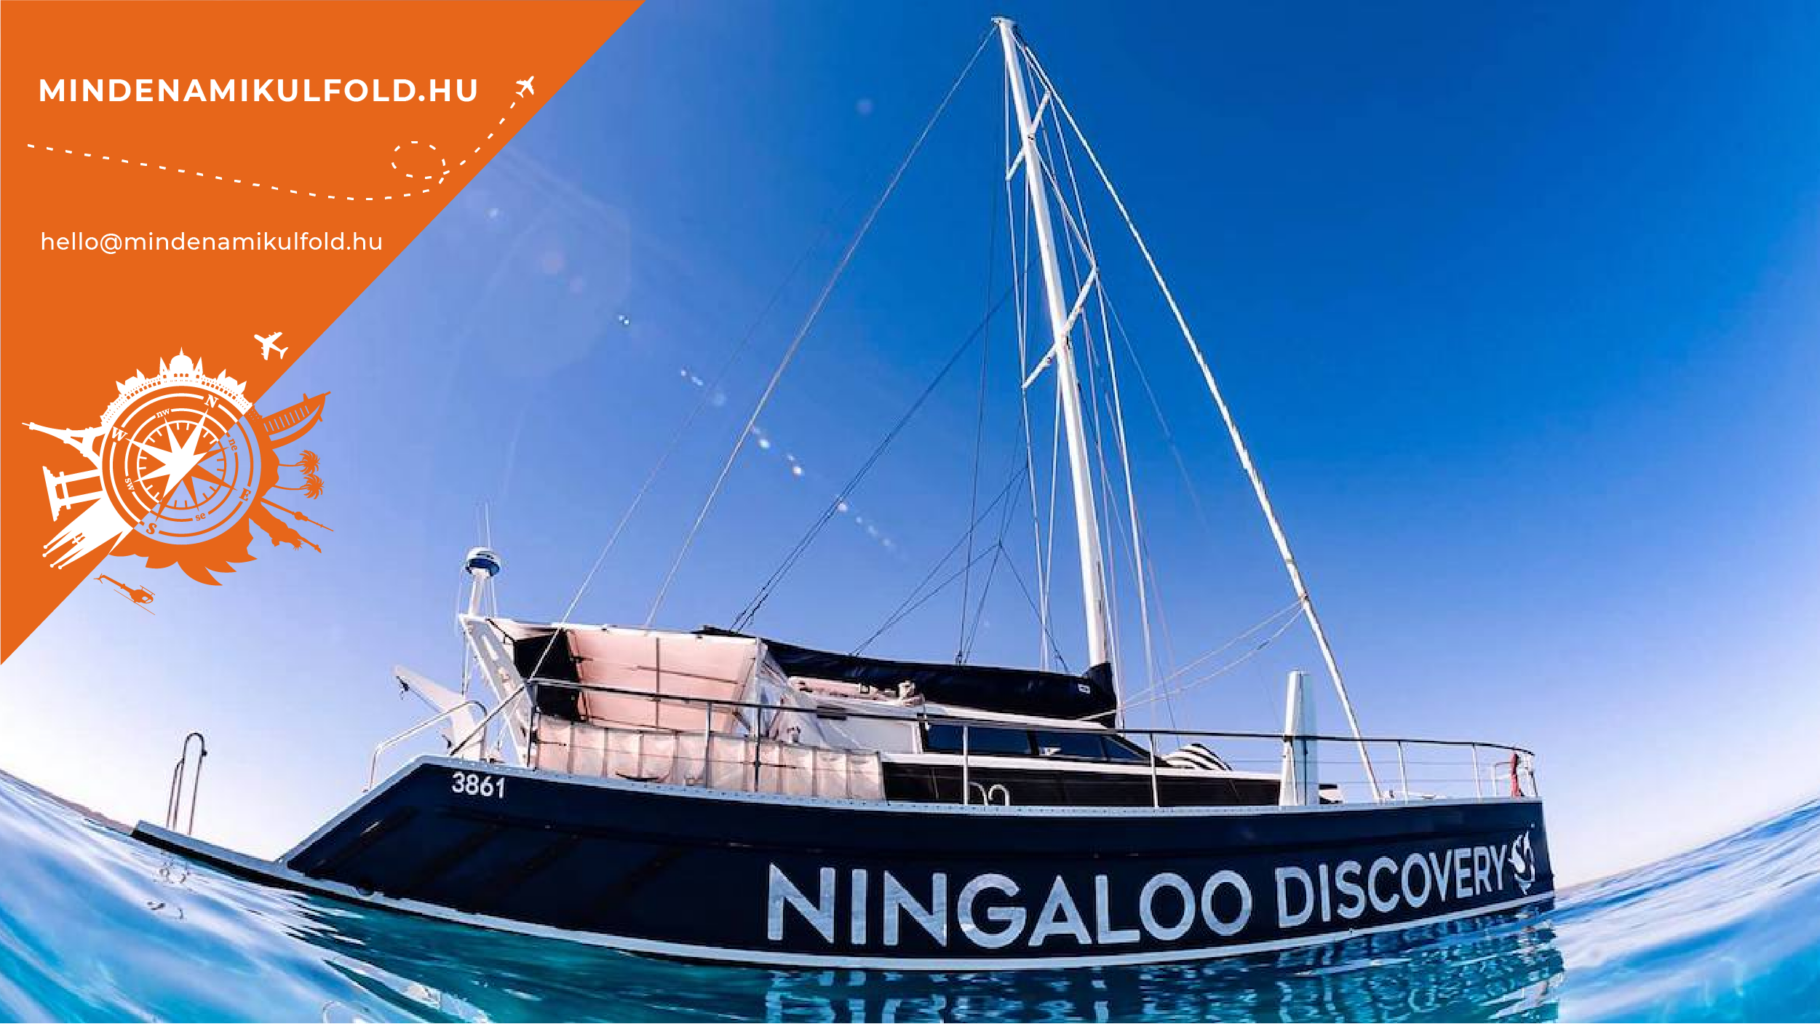 Ningaloo a világ egyik legnagyobb korallzátonya, amely 260 kilométer hosszan húzódik Nyugat-Ausztrália északi partján. CSODAVILÁG >>>